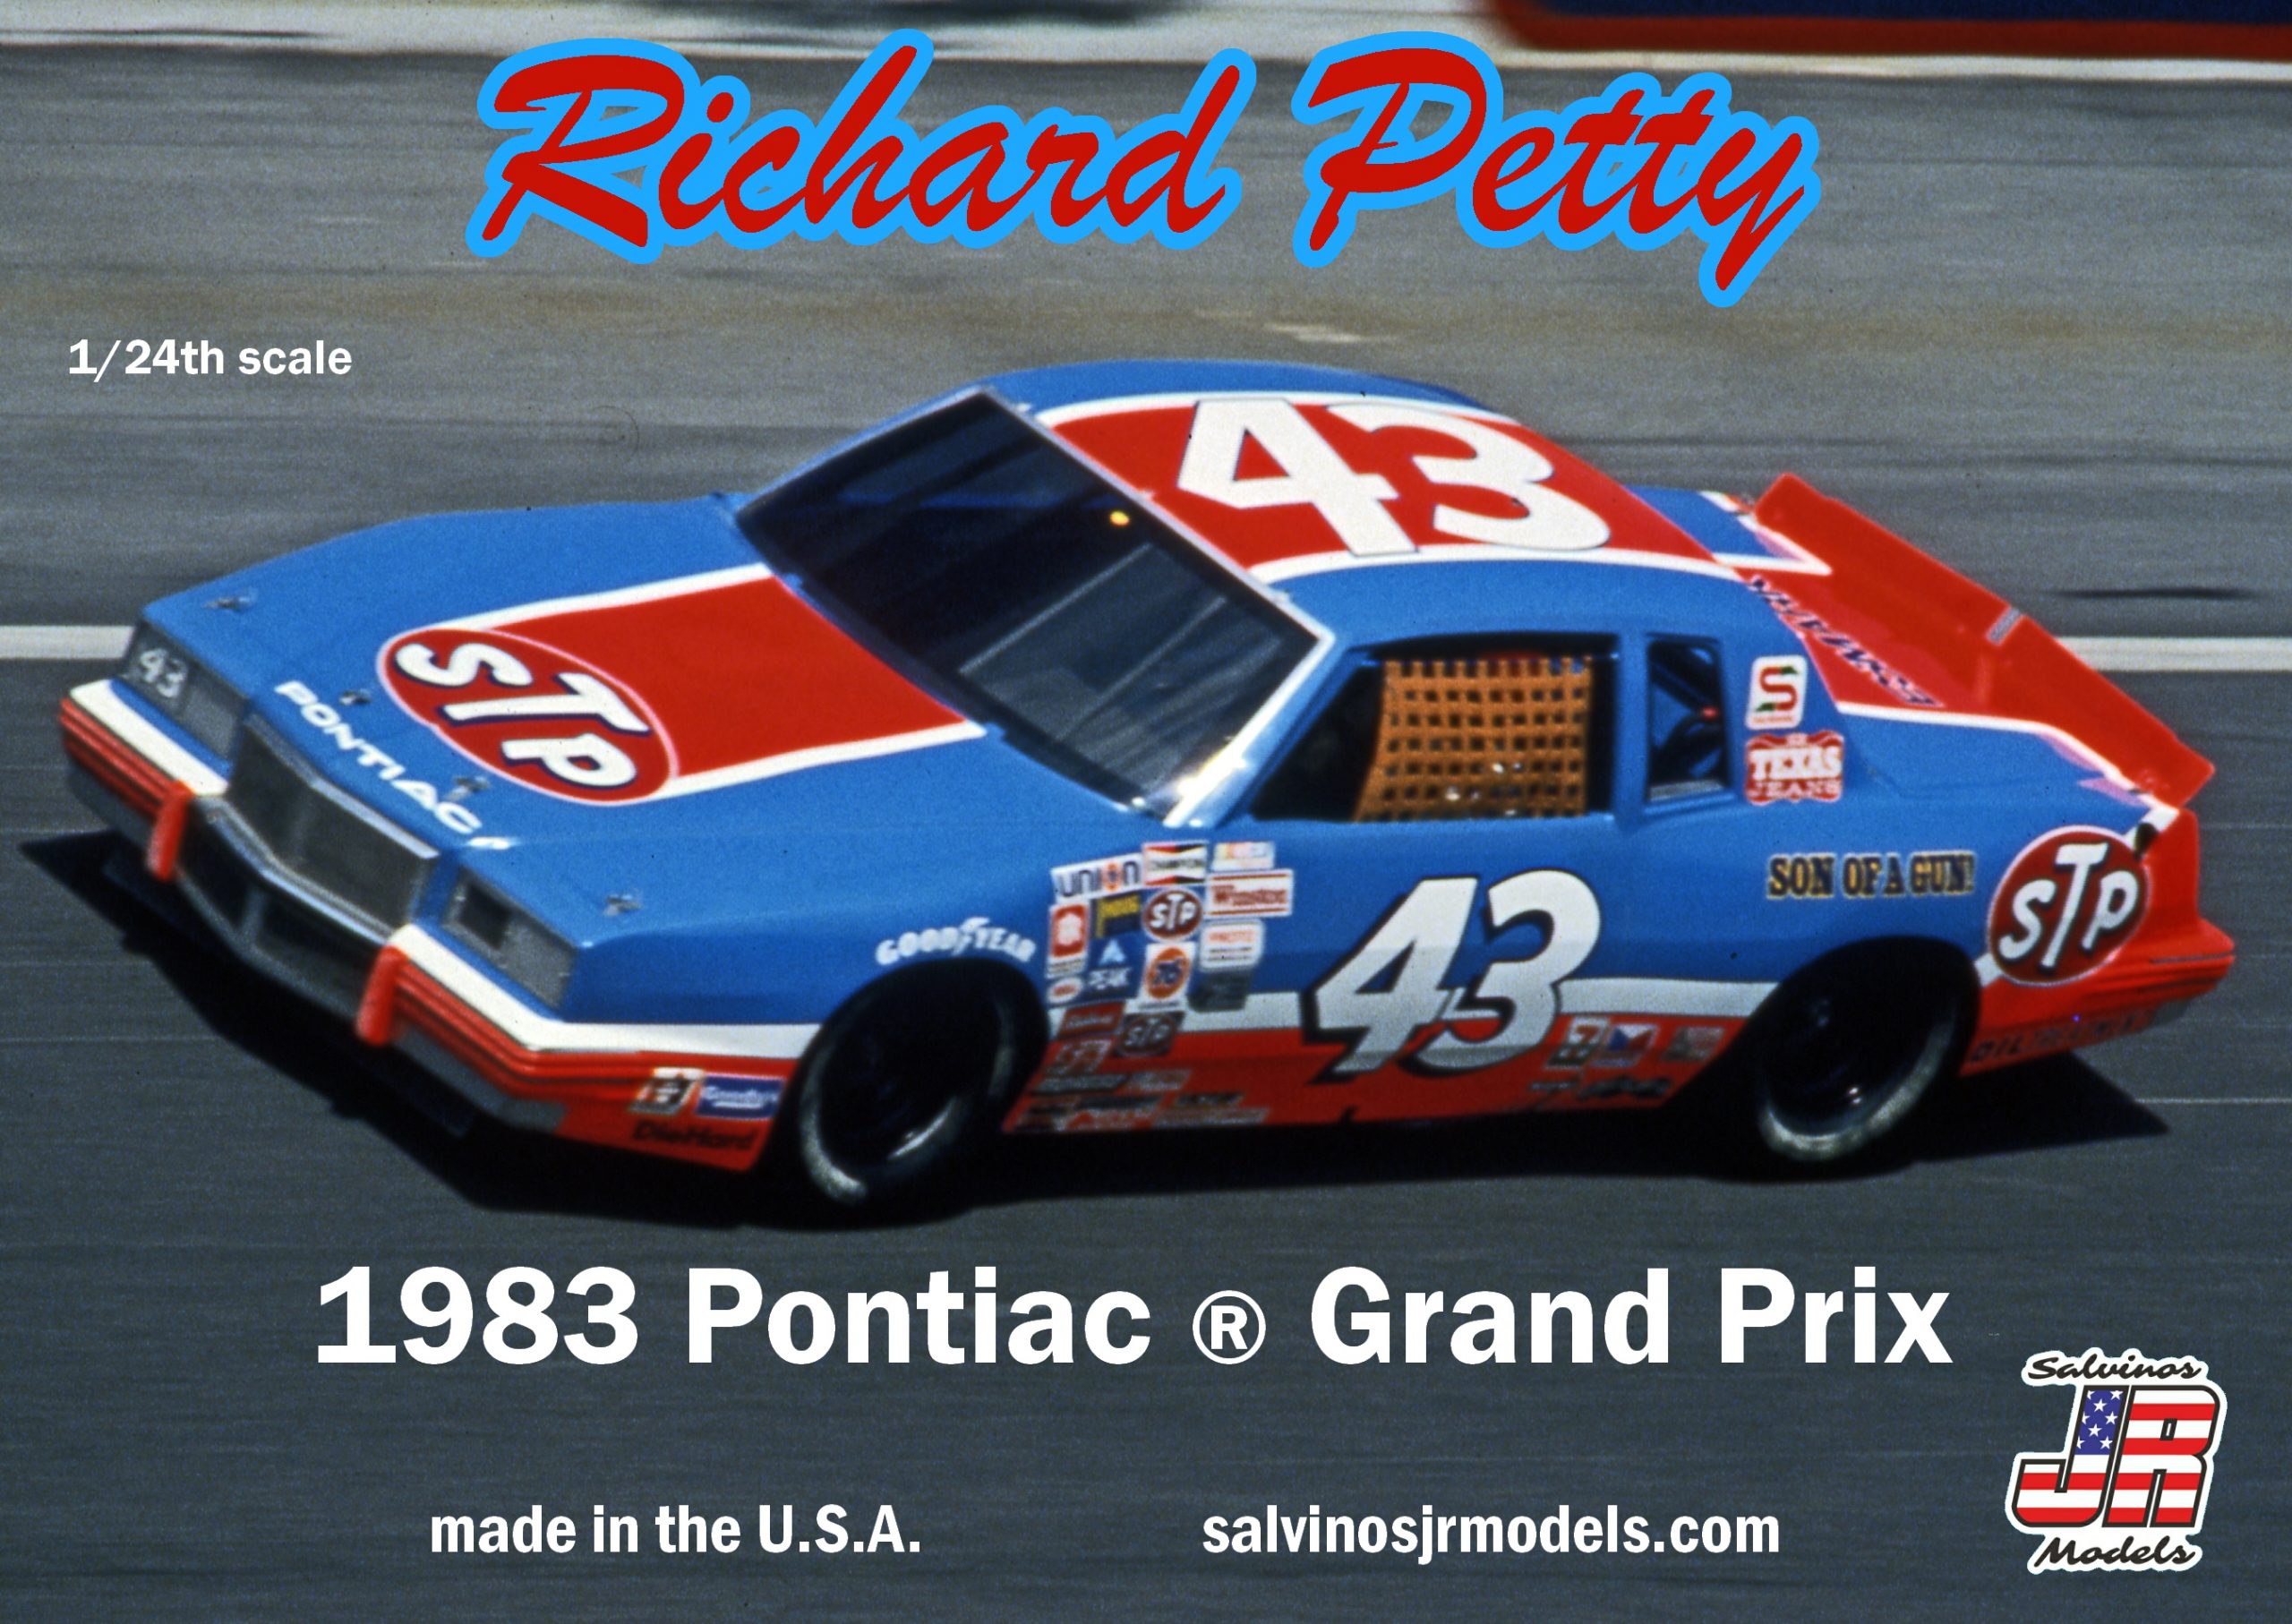 Richard Petty 1983 Pontiac Grand Prix Talladega Winner